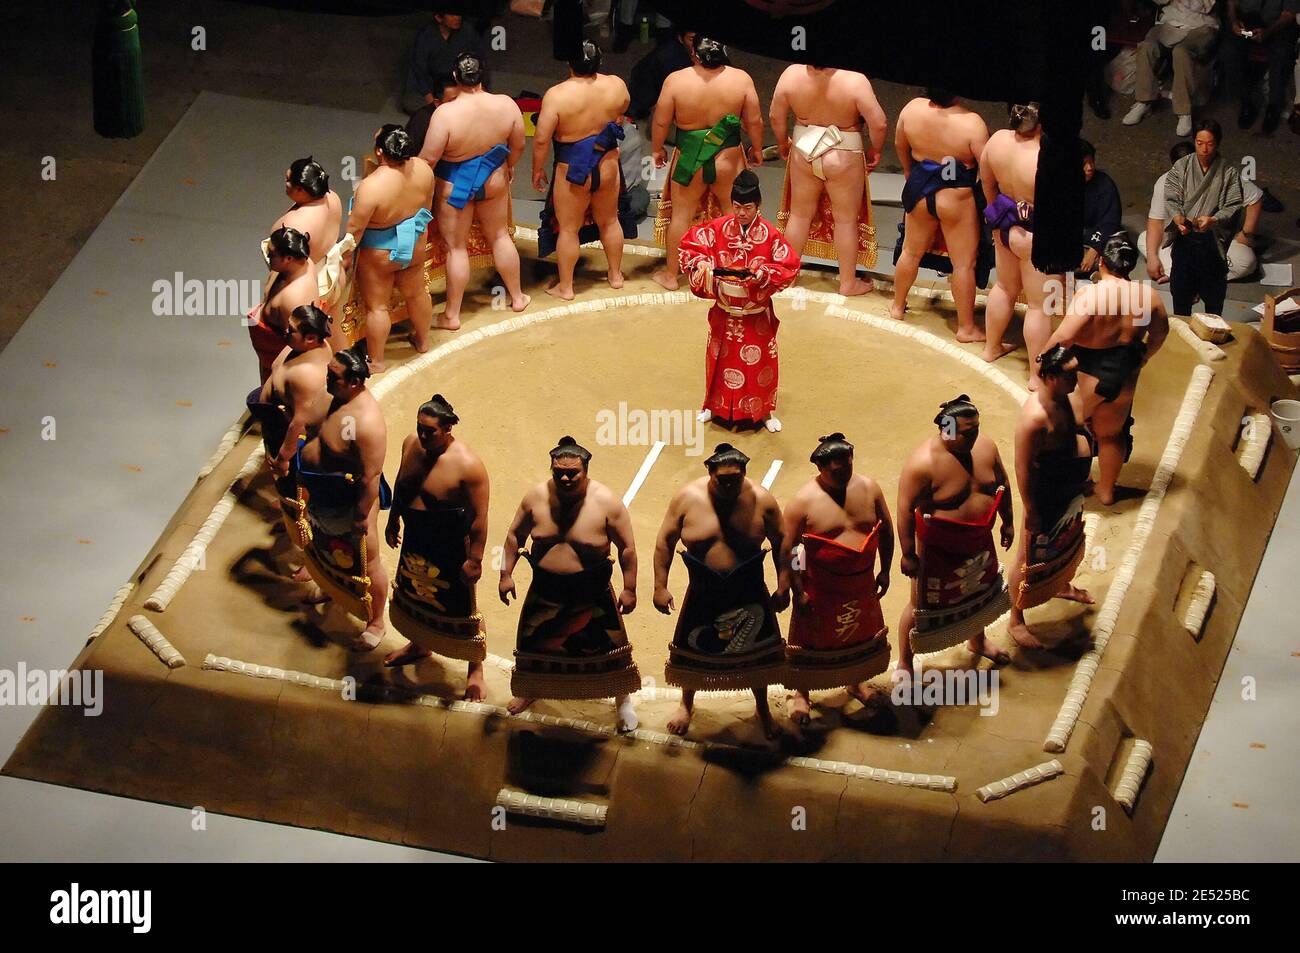 Japanische Sumo-Ringer bei den Eröffnungszeremonien im Sumo Ring (Dohyo) vor dem Start des zweiten Tages des Grand Sumo Tournament im L.A. Sports Arena 2008 in Los Angeles, CA, USA am 8. Juni 2008. Foto von Louis Lopez/Cal Sport Media/Cameleon/ABACAPRESS.COM Stockfoto